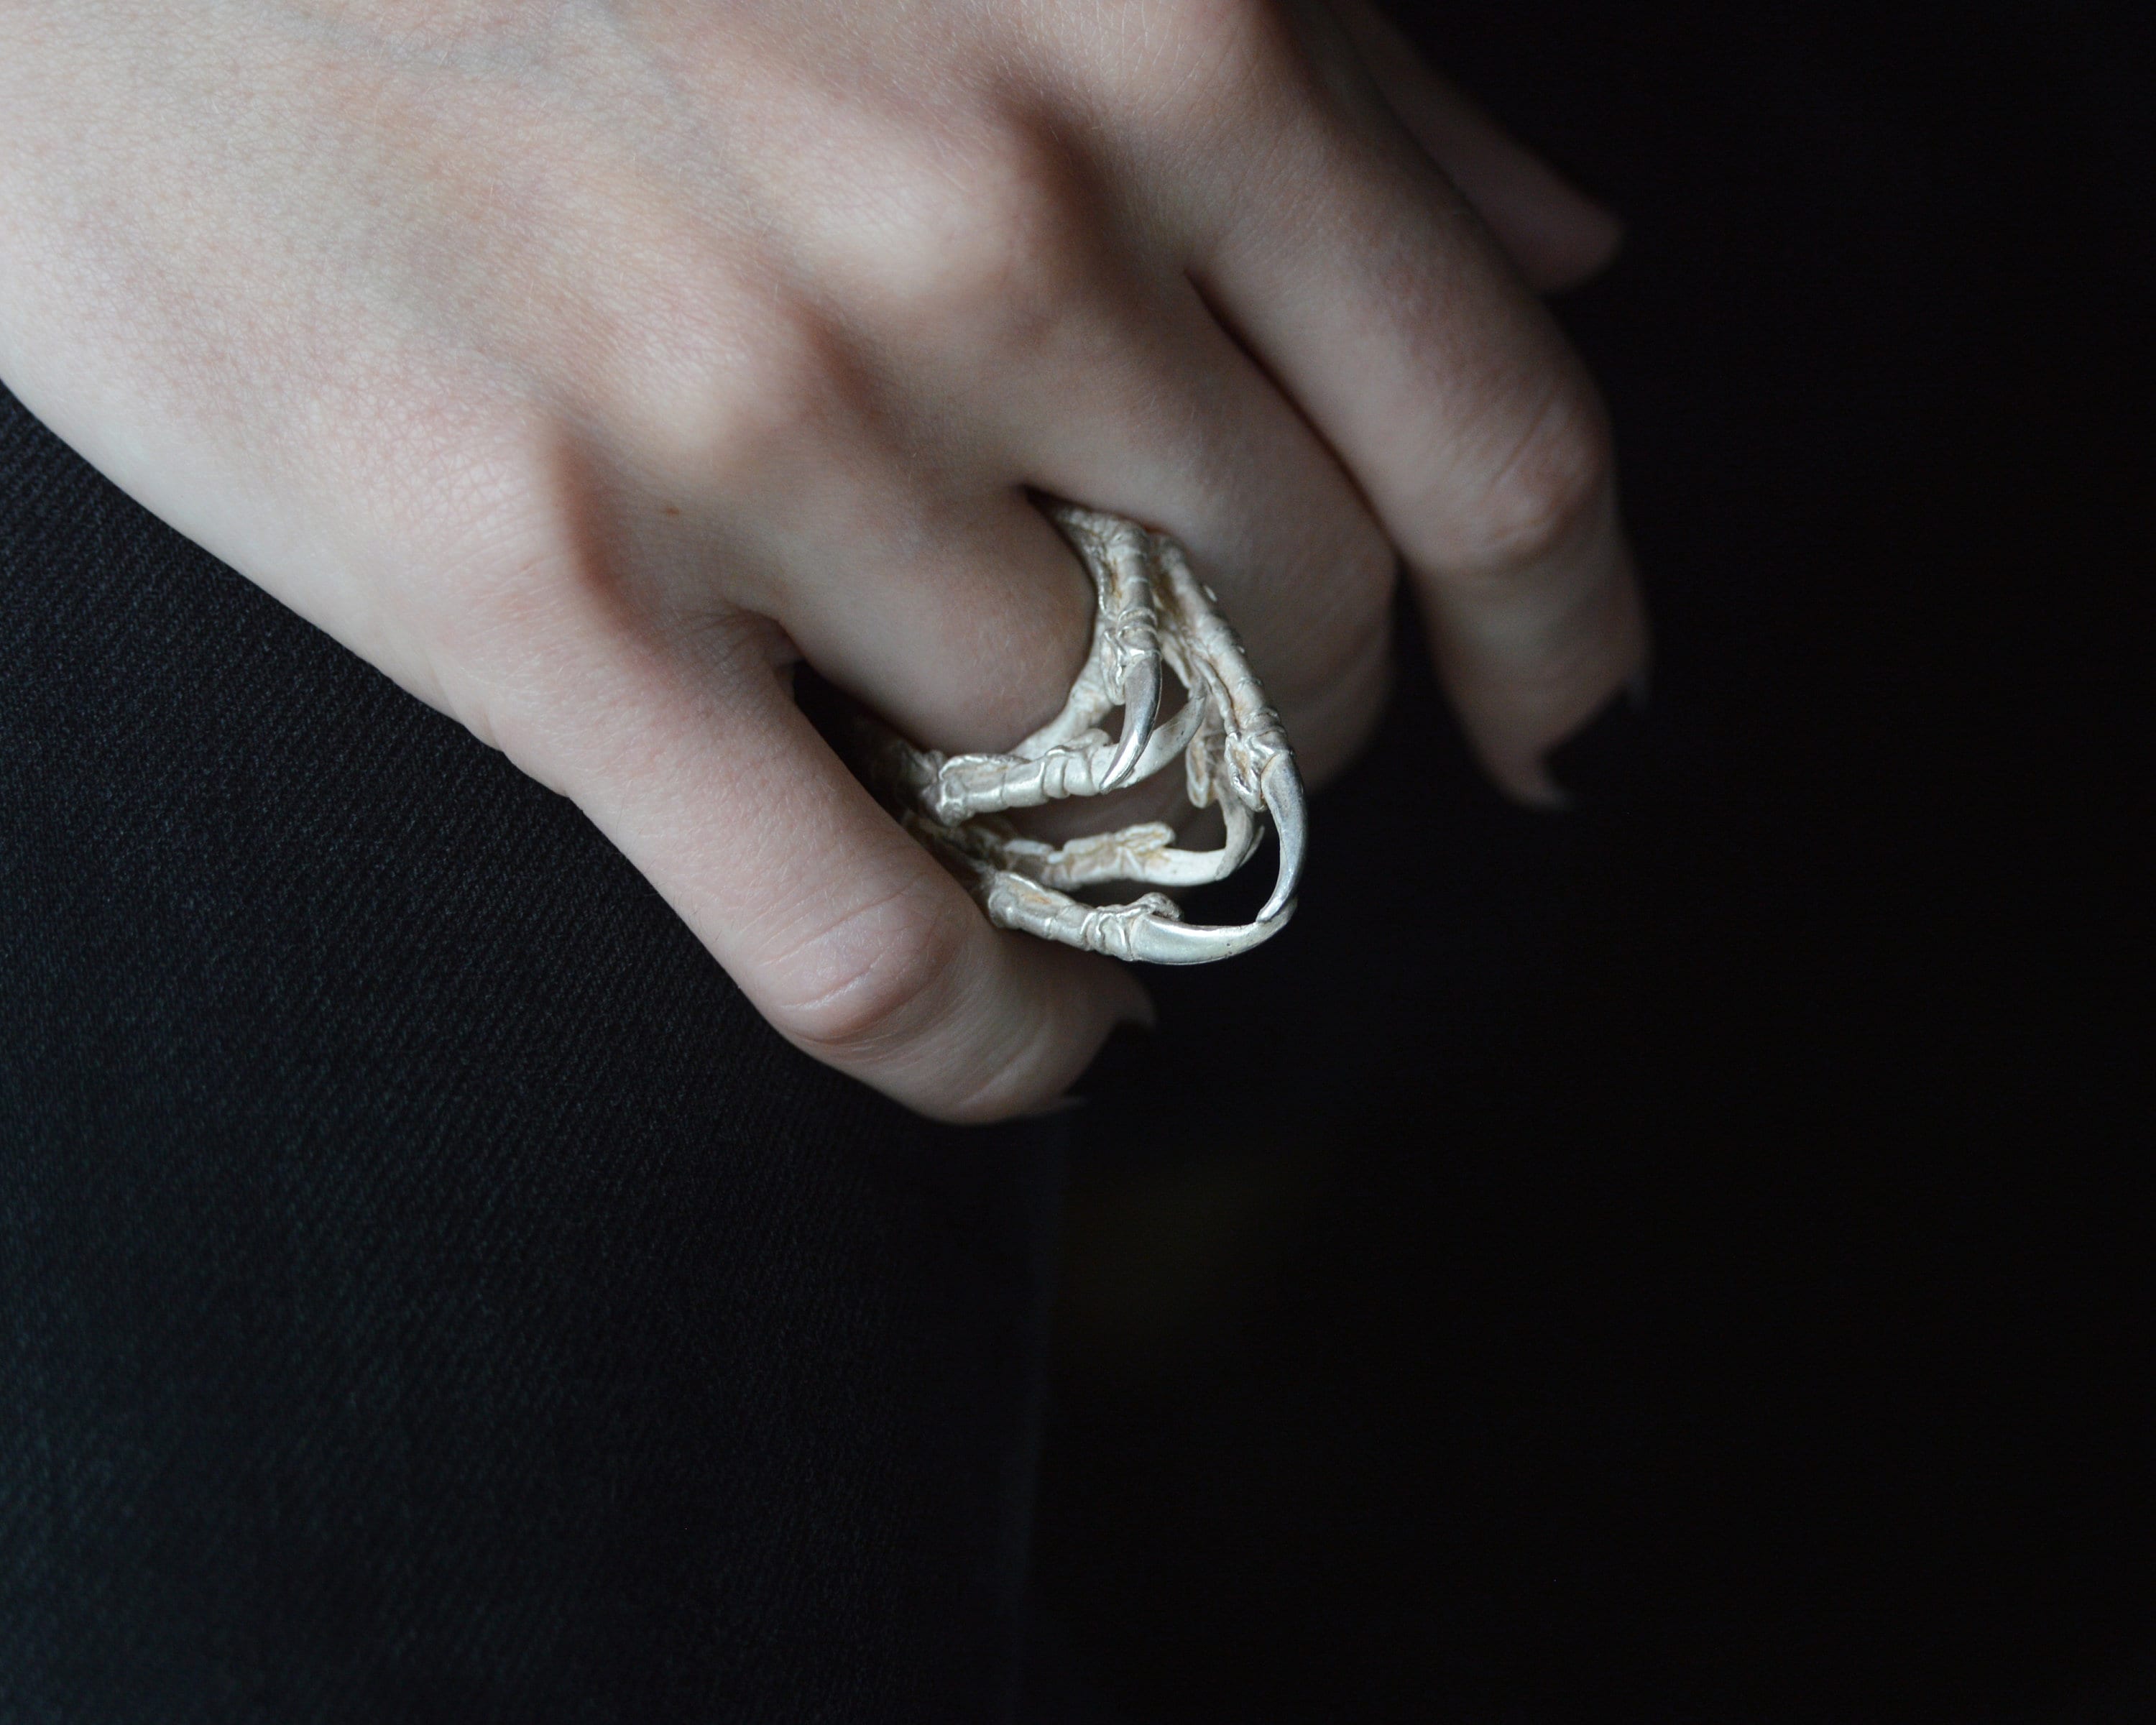 Emorias Anillo de mujer con forma de flor y anillo abierto de moda para regalo de amante ajustable